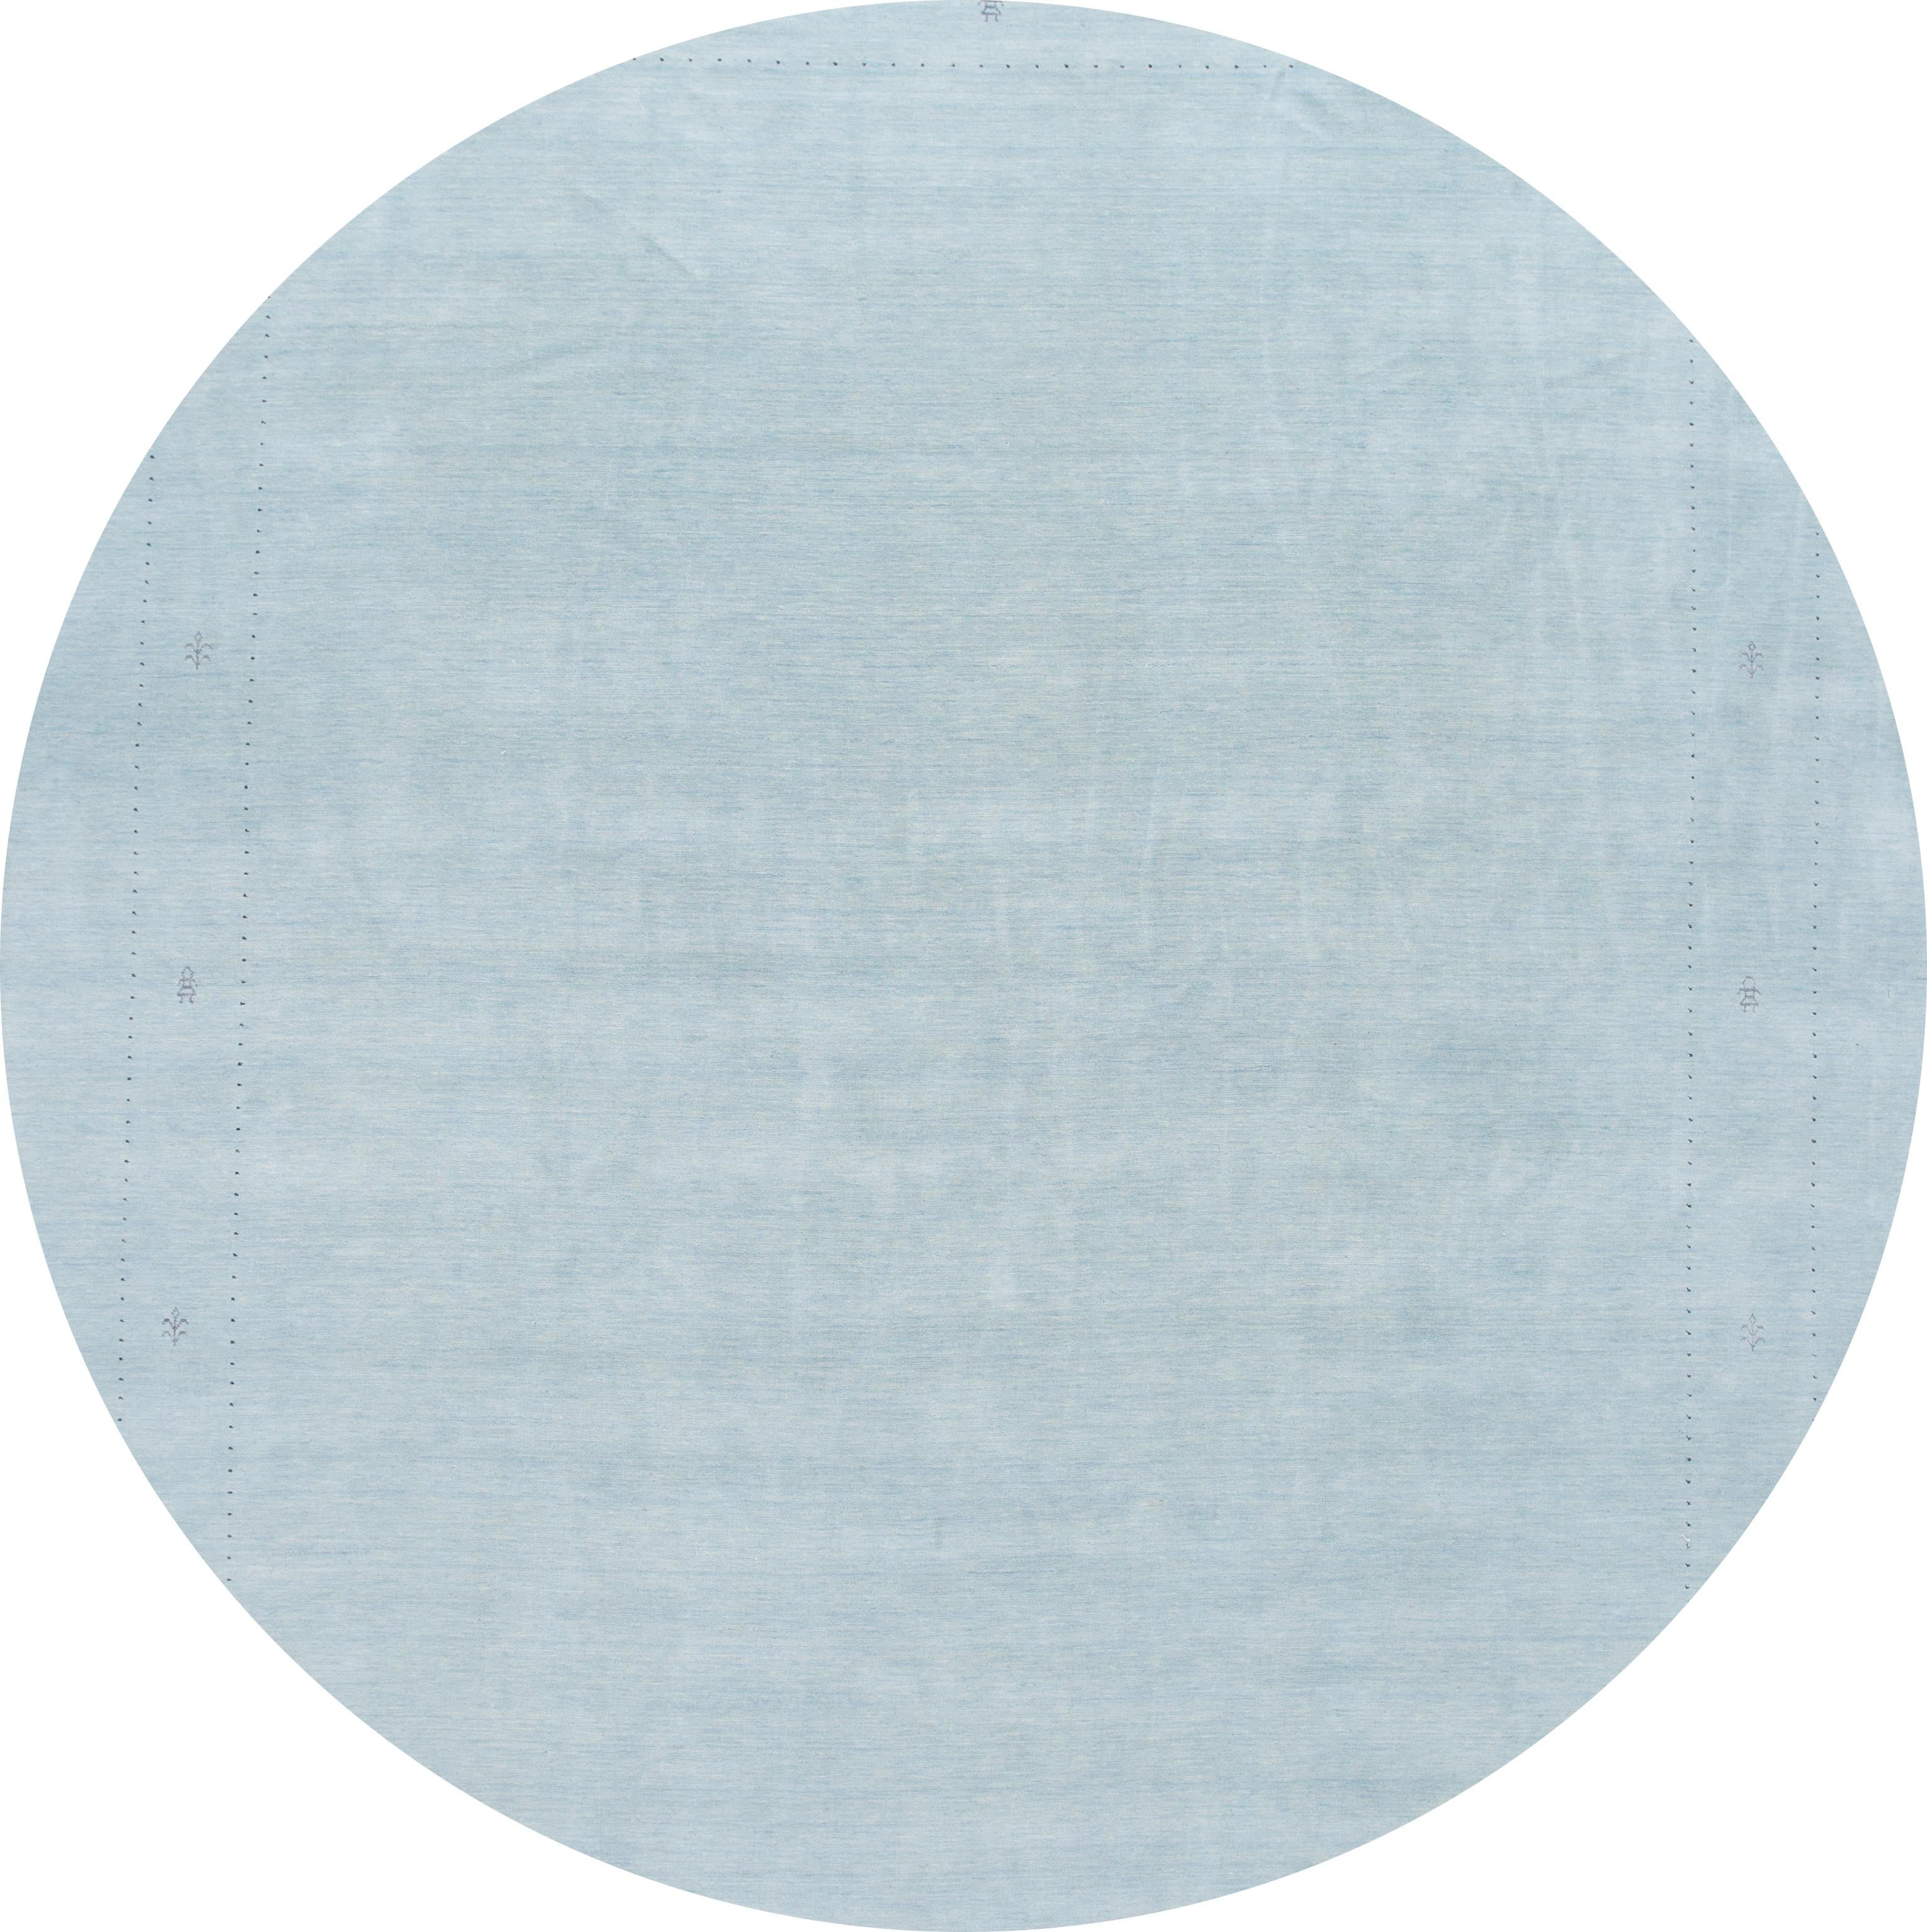 Schöner zeitgenössischer Gabbeh-Designteppich mit blauem Feld und schönem Allover-Streifenmuster. 

Dieser Teppich misst 12